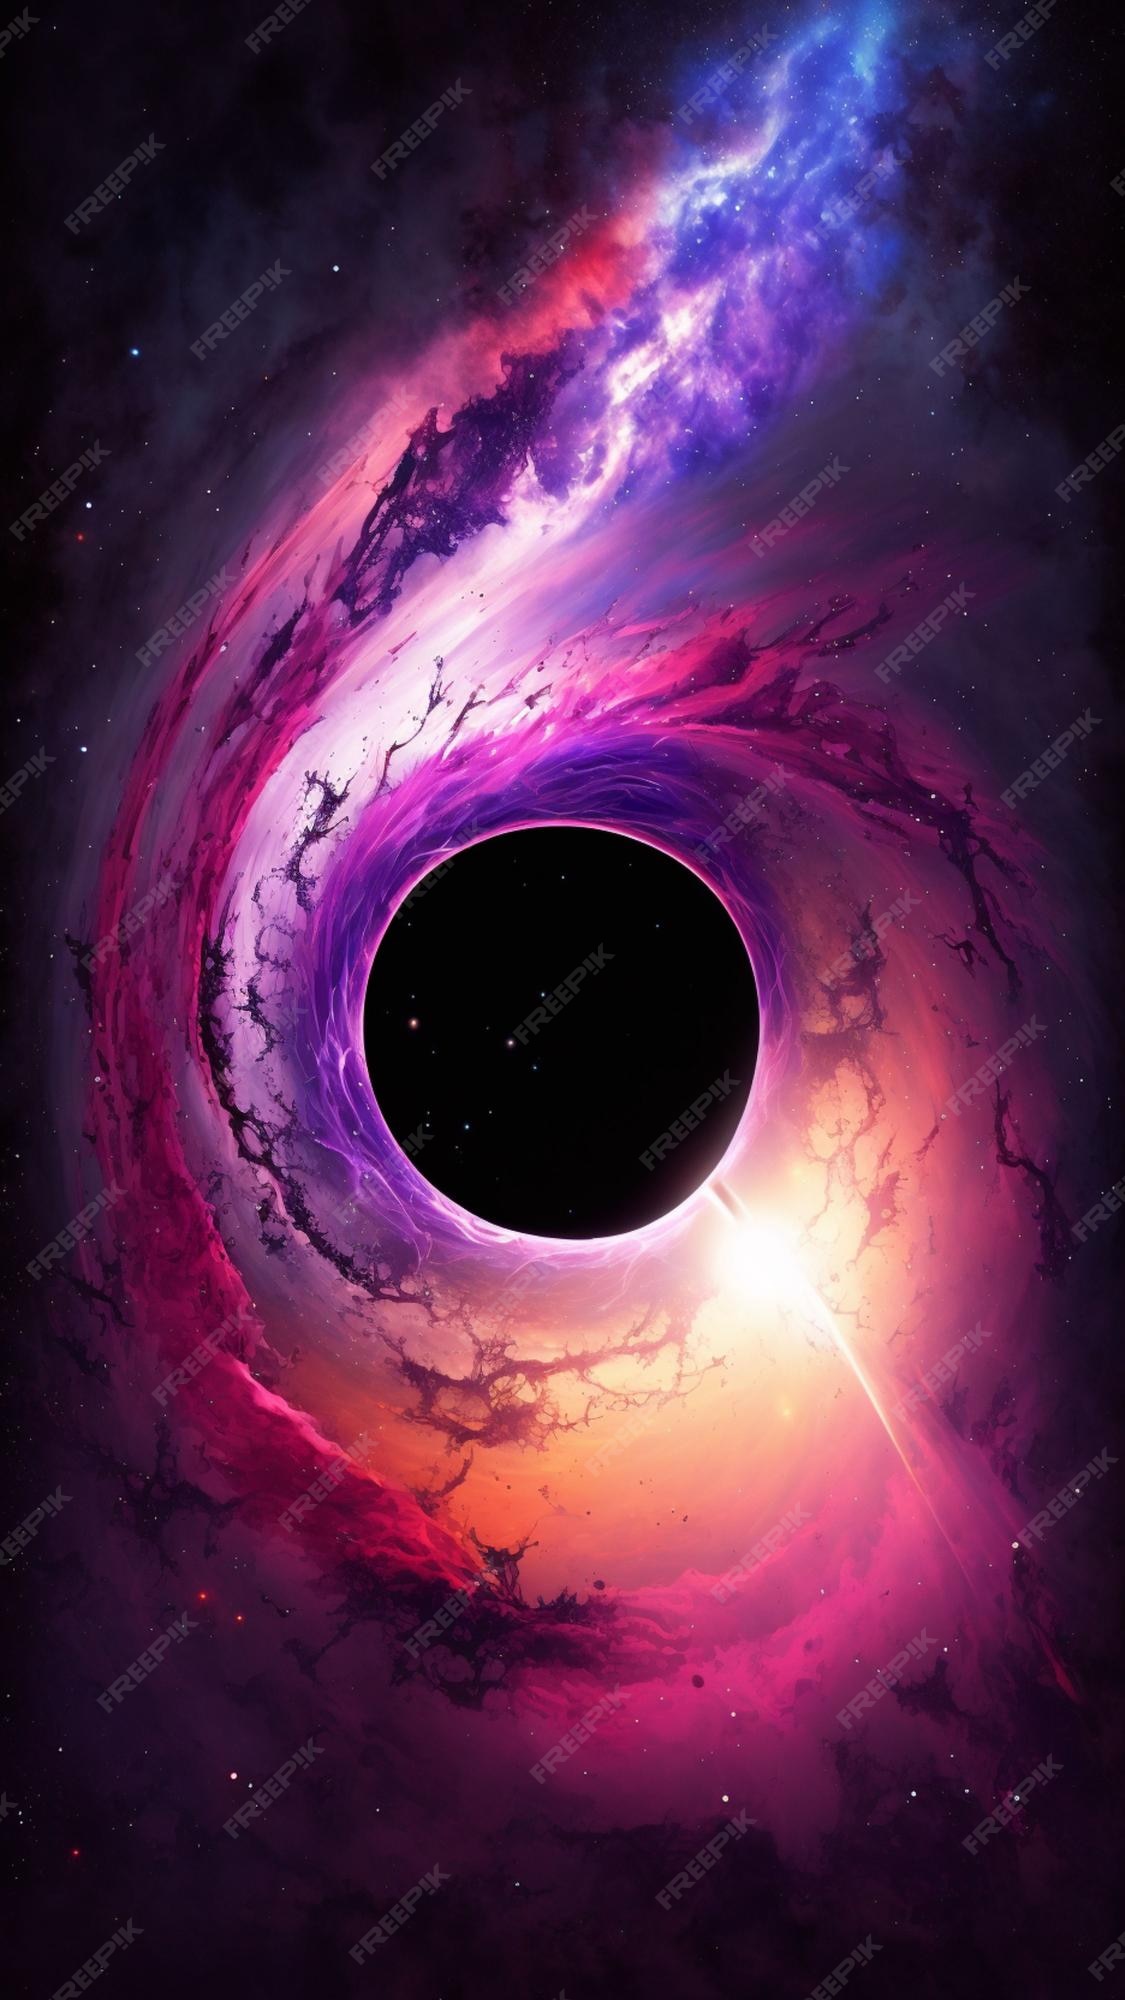 Bạn có muốn bước vào những lỗ đen không gian và tìm hiểu về vũ trụ đầy bí ẩn? Hãy truy cập để chiêm ngưỡng những hình ảnh tuyệt đẹp về không gian đen như thế này.